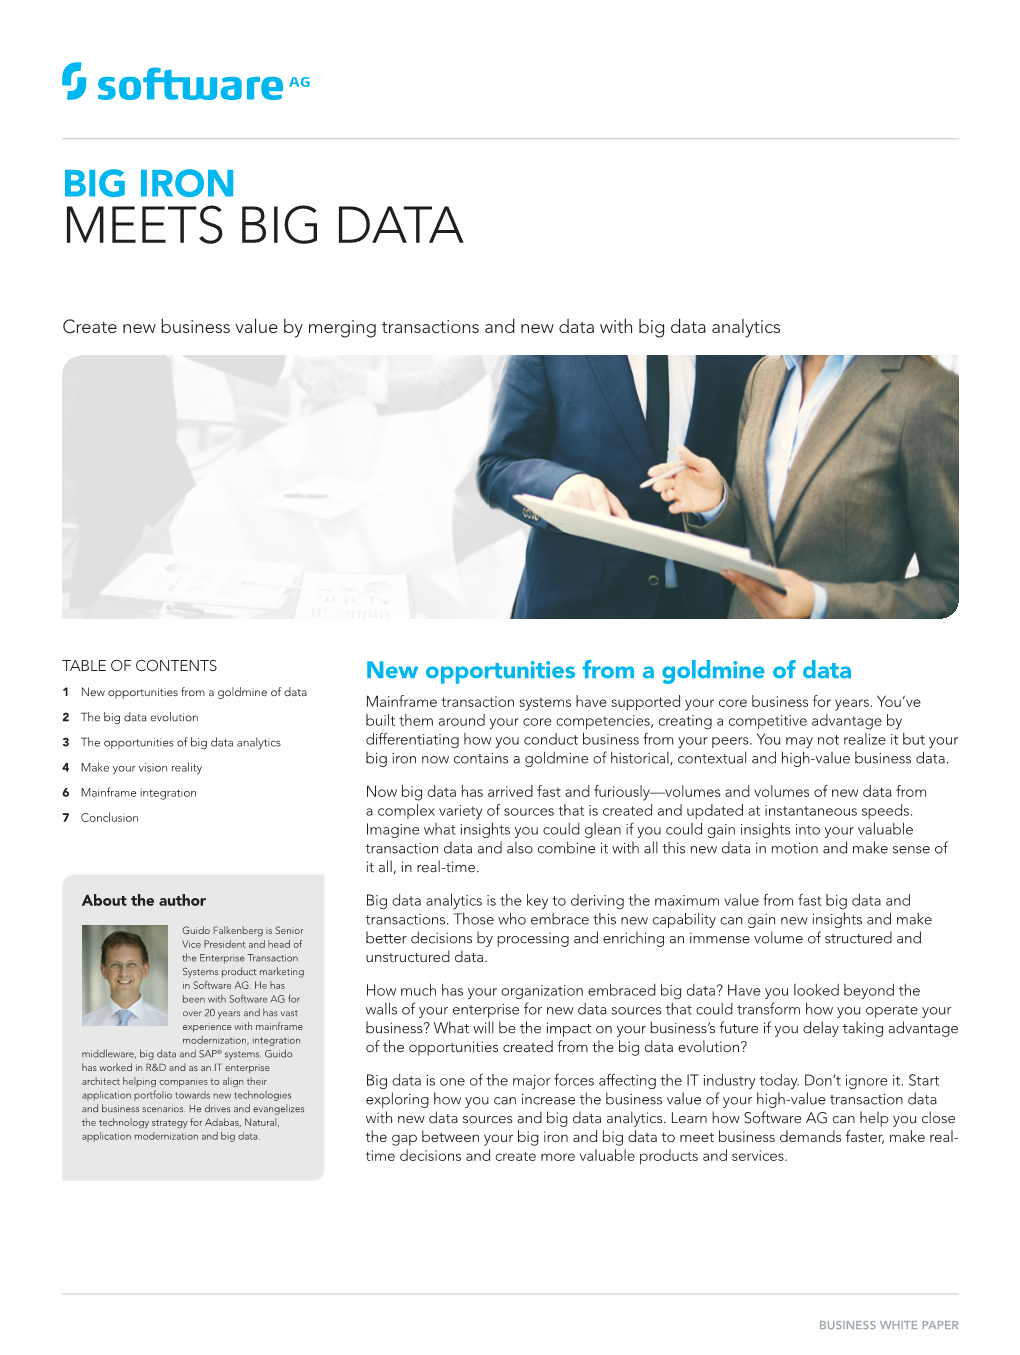 Meets Big Data